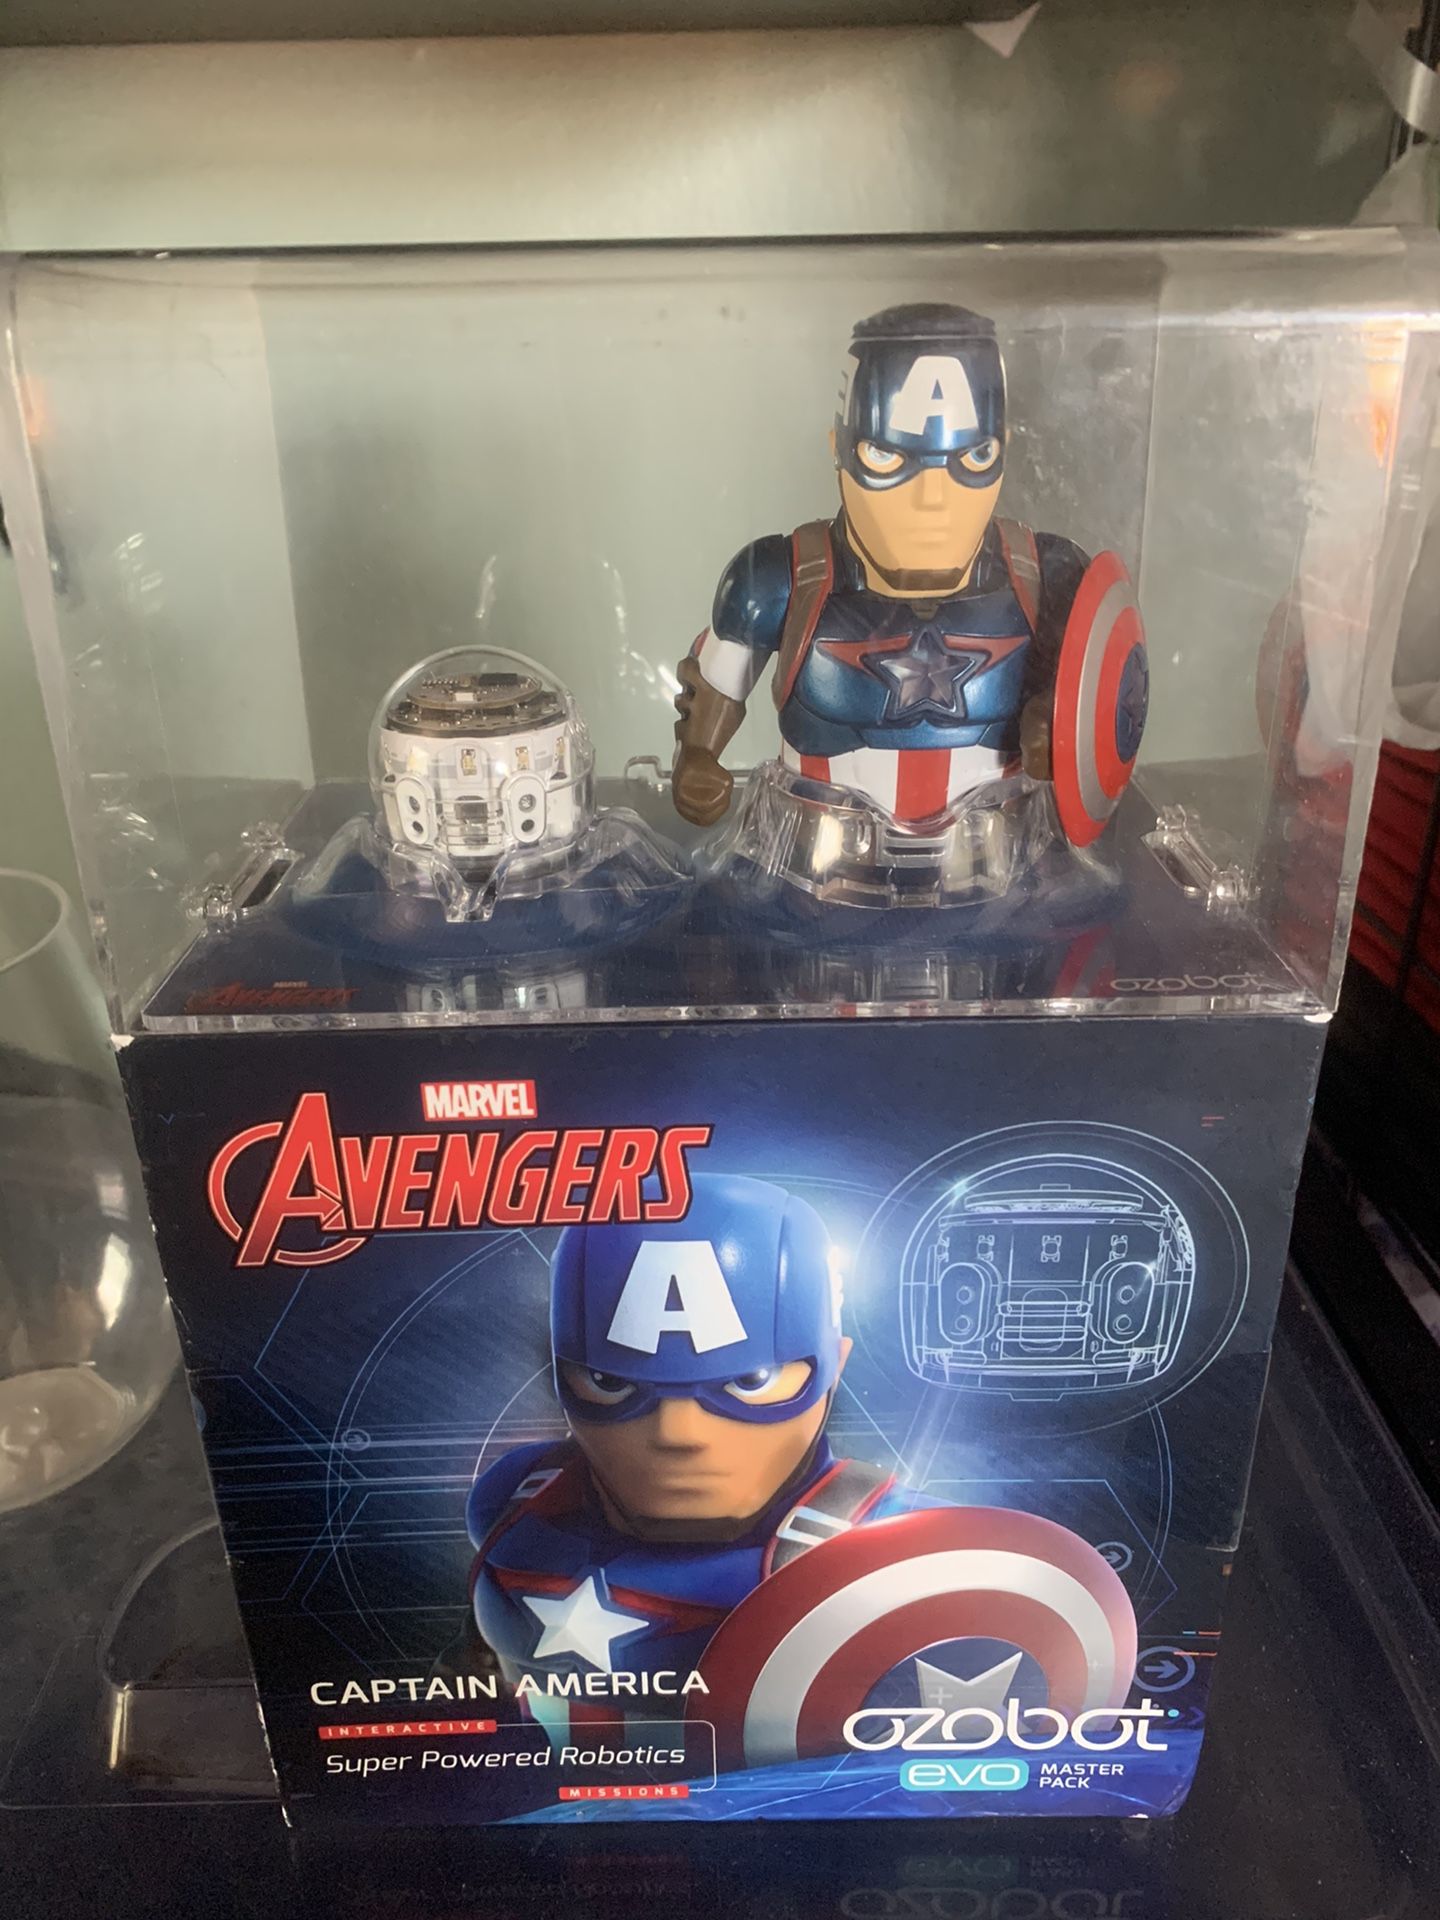 Avengers captain America ozobot ,brand new